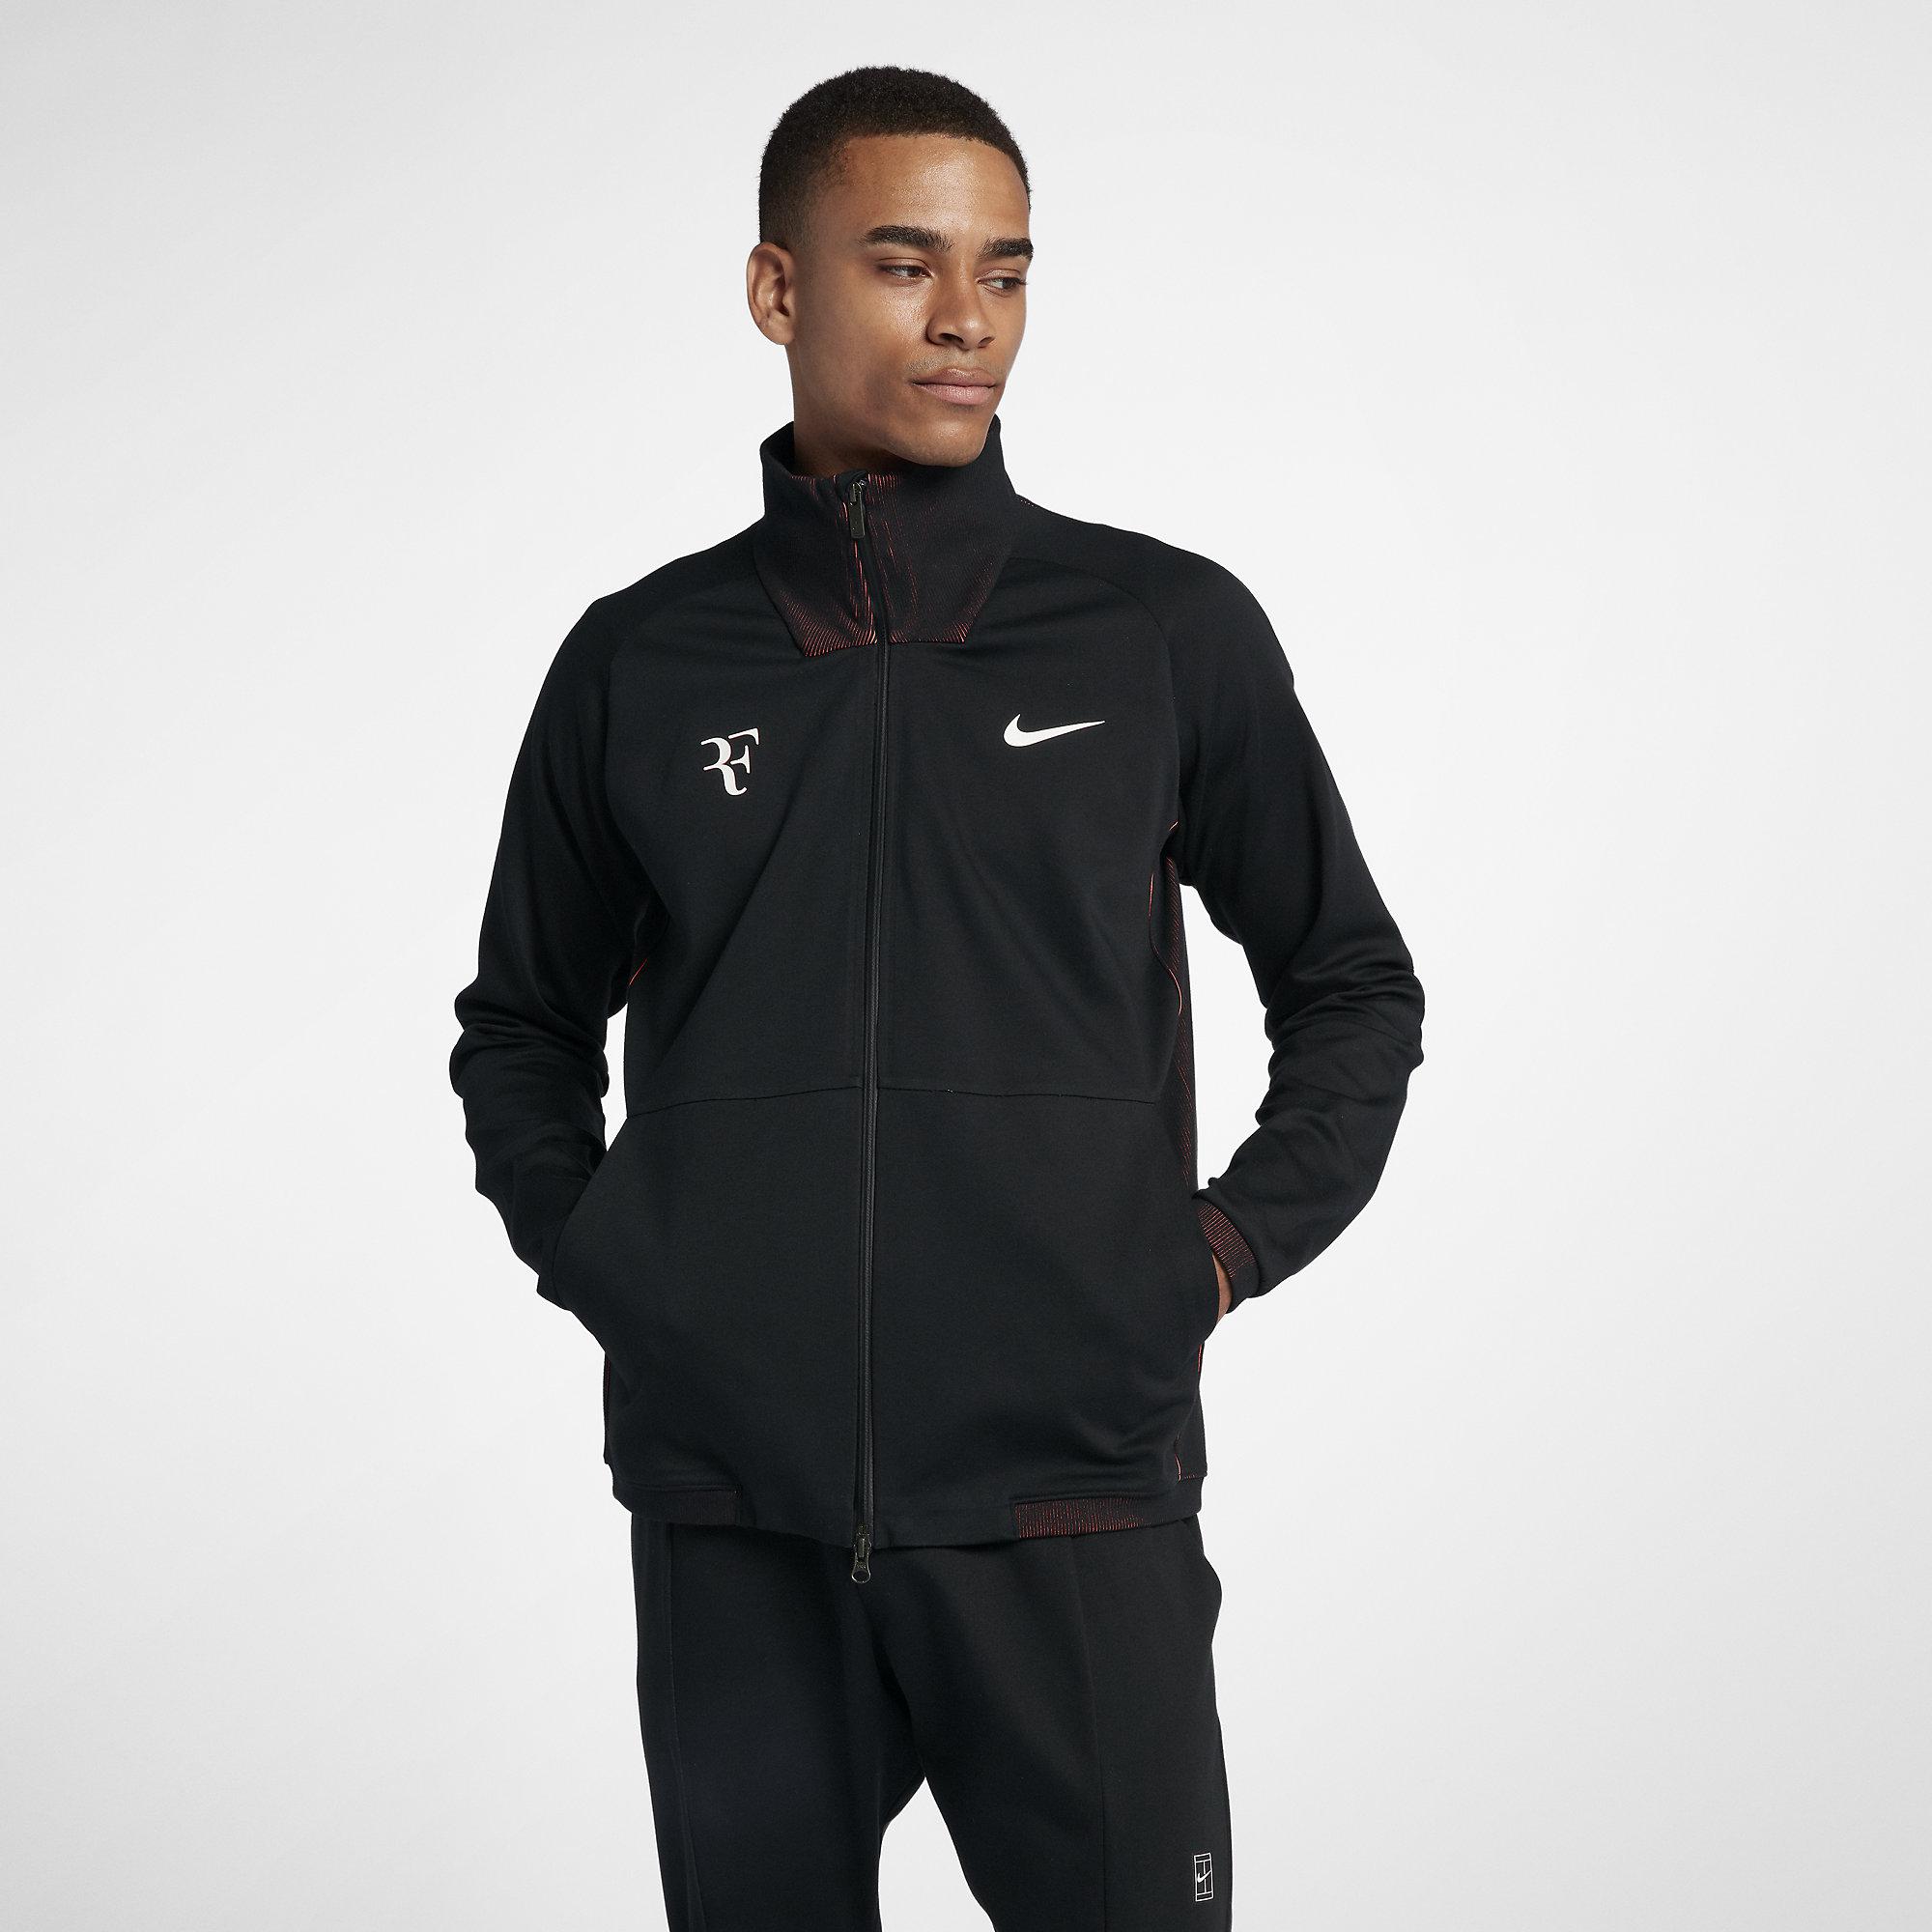 Nike Mens RF Tennis Jacket - Black/Lava Glow - Tennisnuts.com